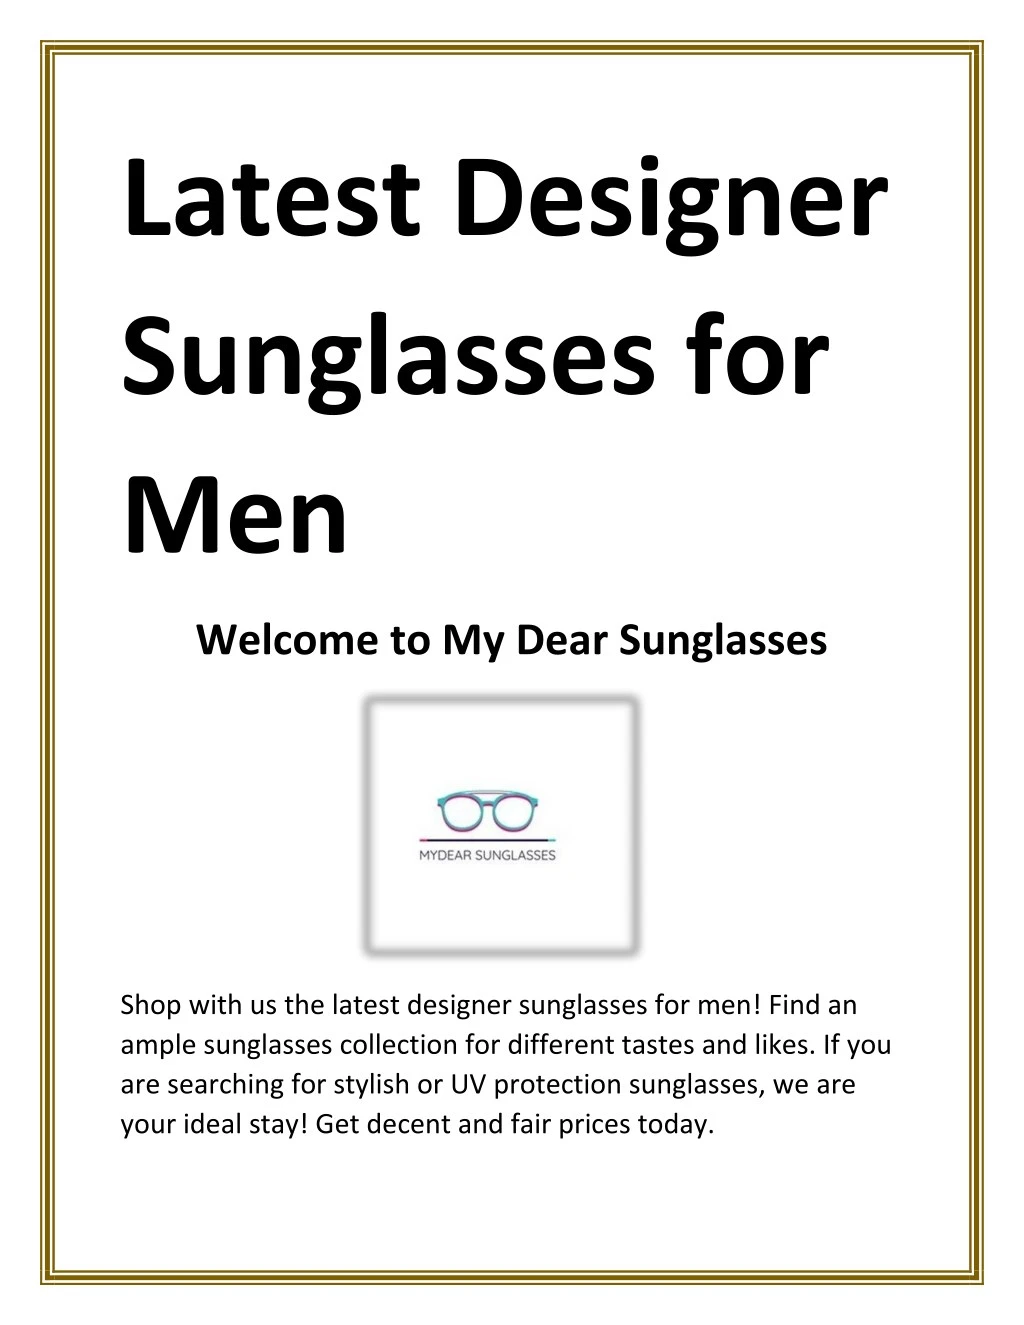 latest designer sunglasses for men